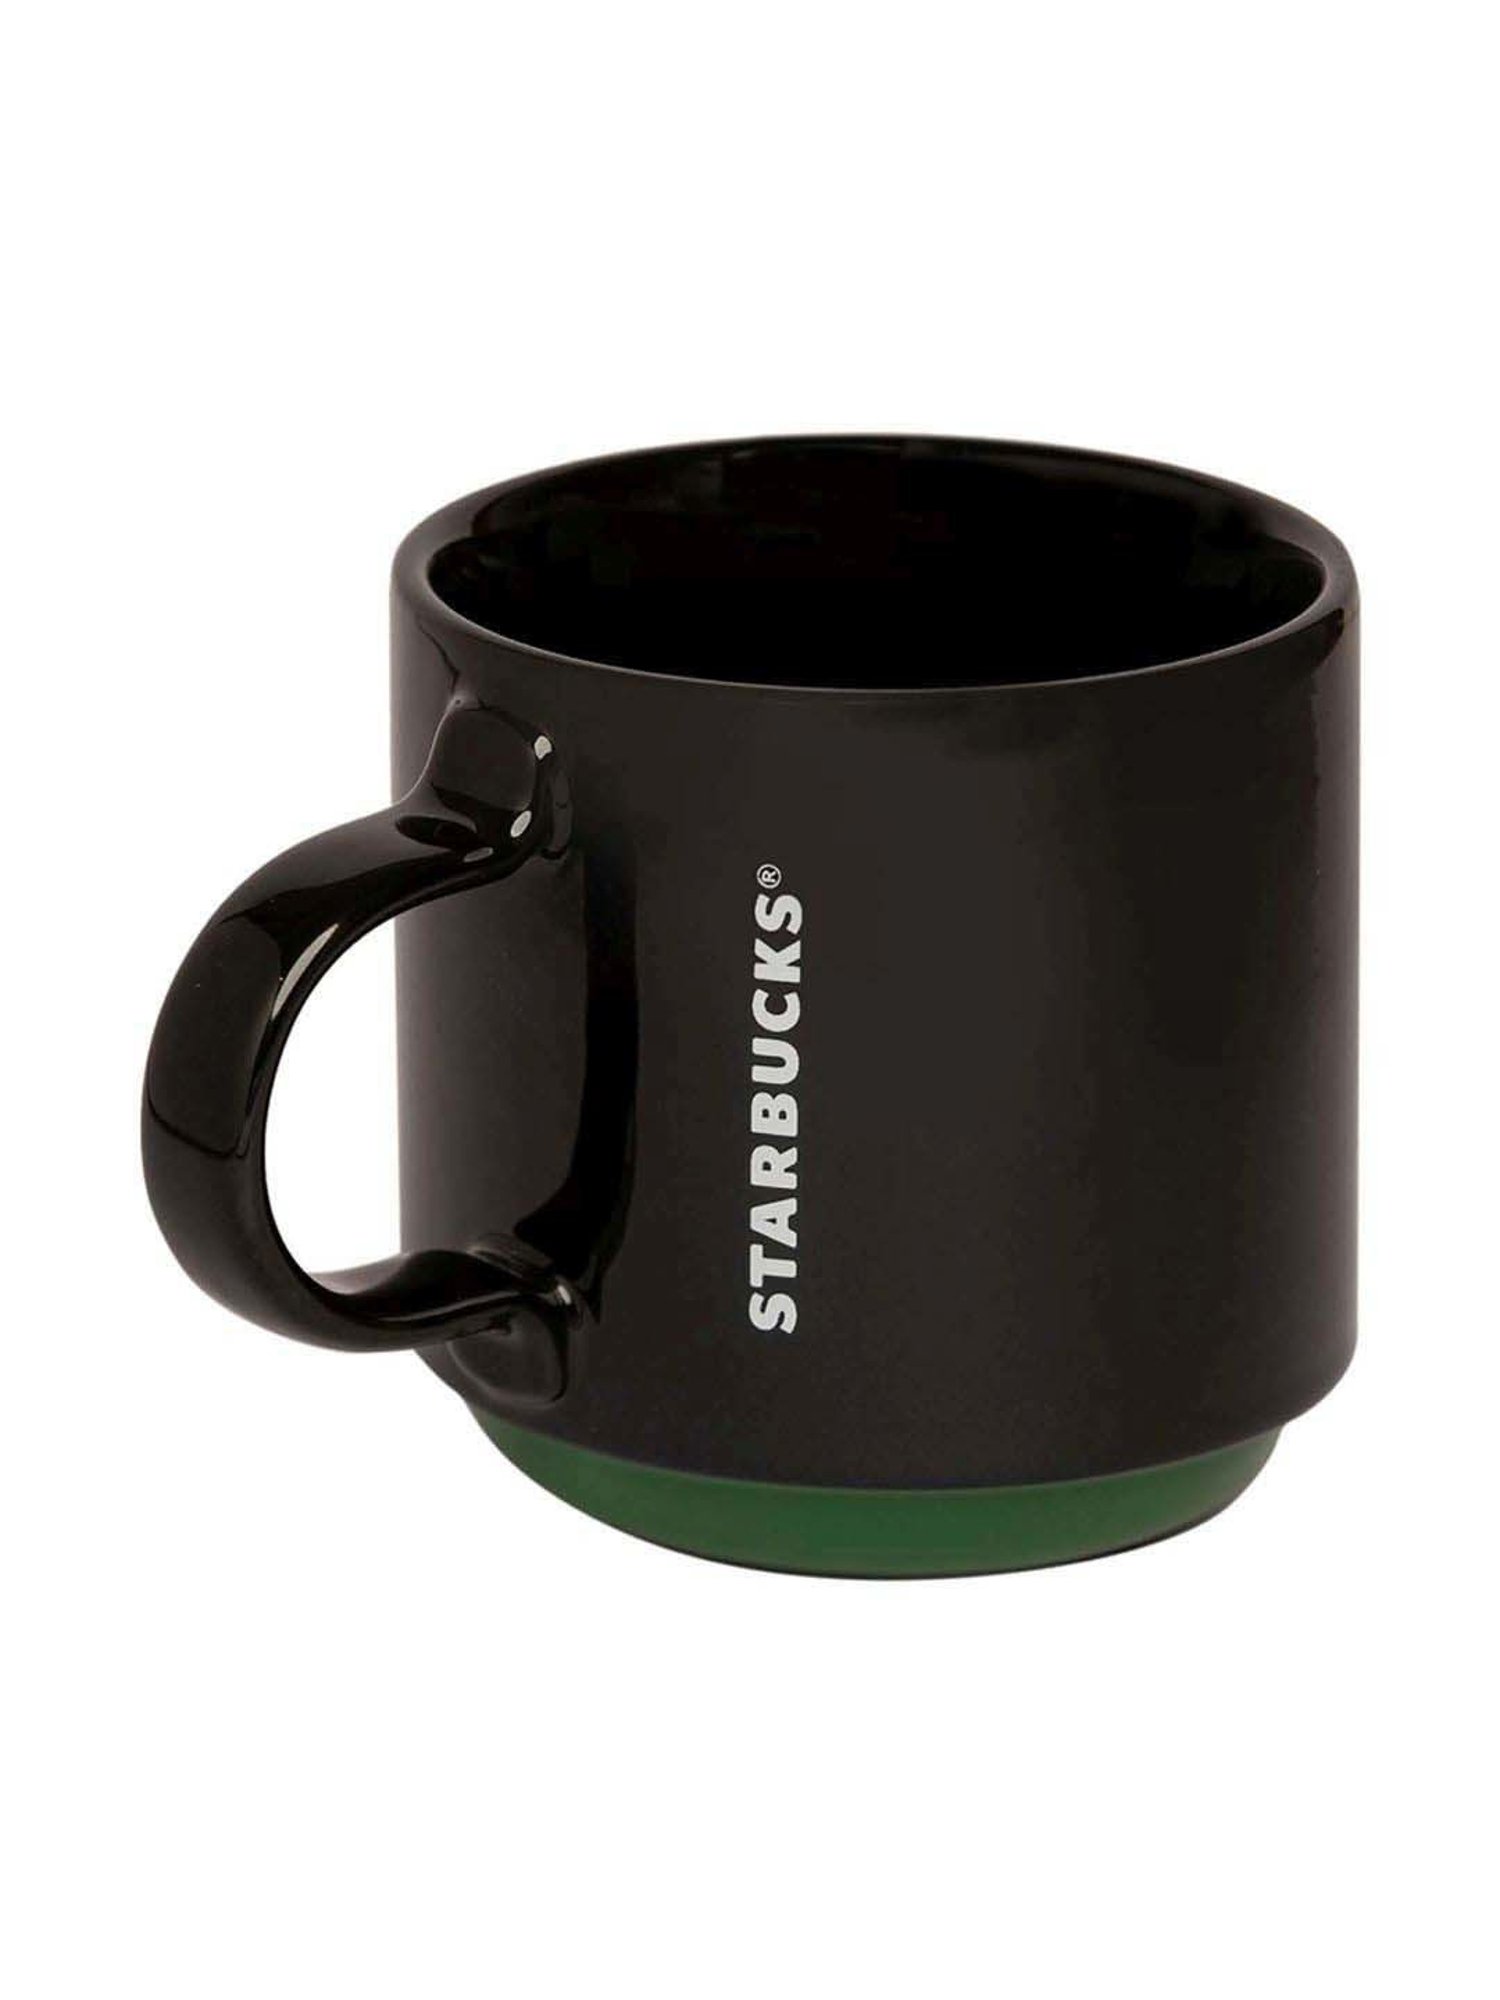 Starbucks - Siren house mug 237ml – DKshop